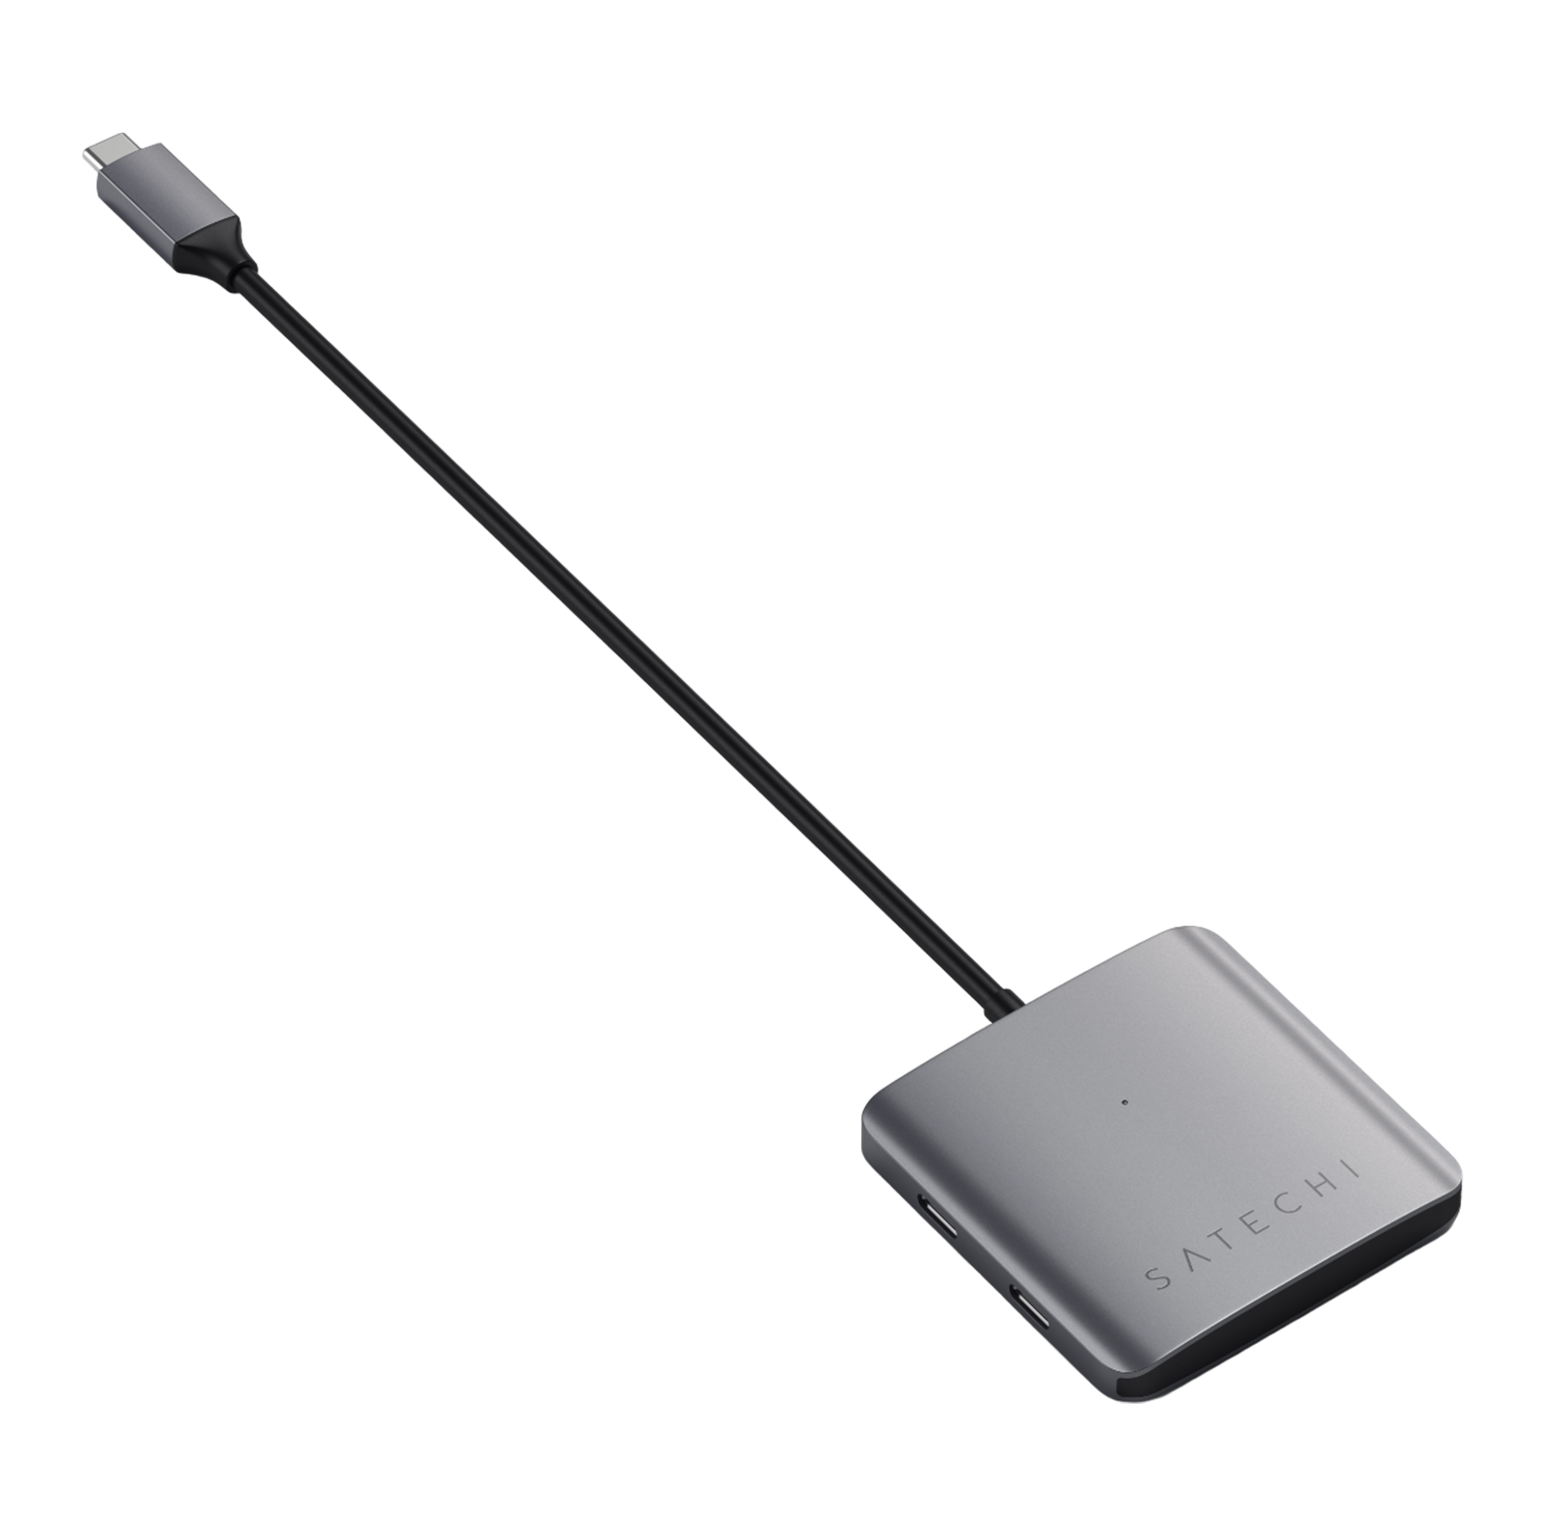 Satechi 4-Port USB-C Hub